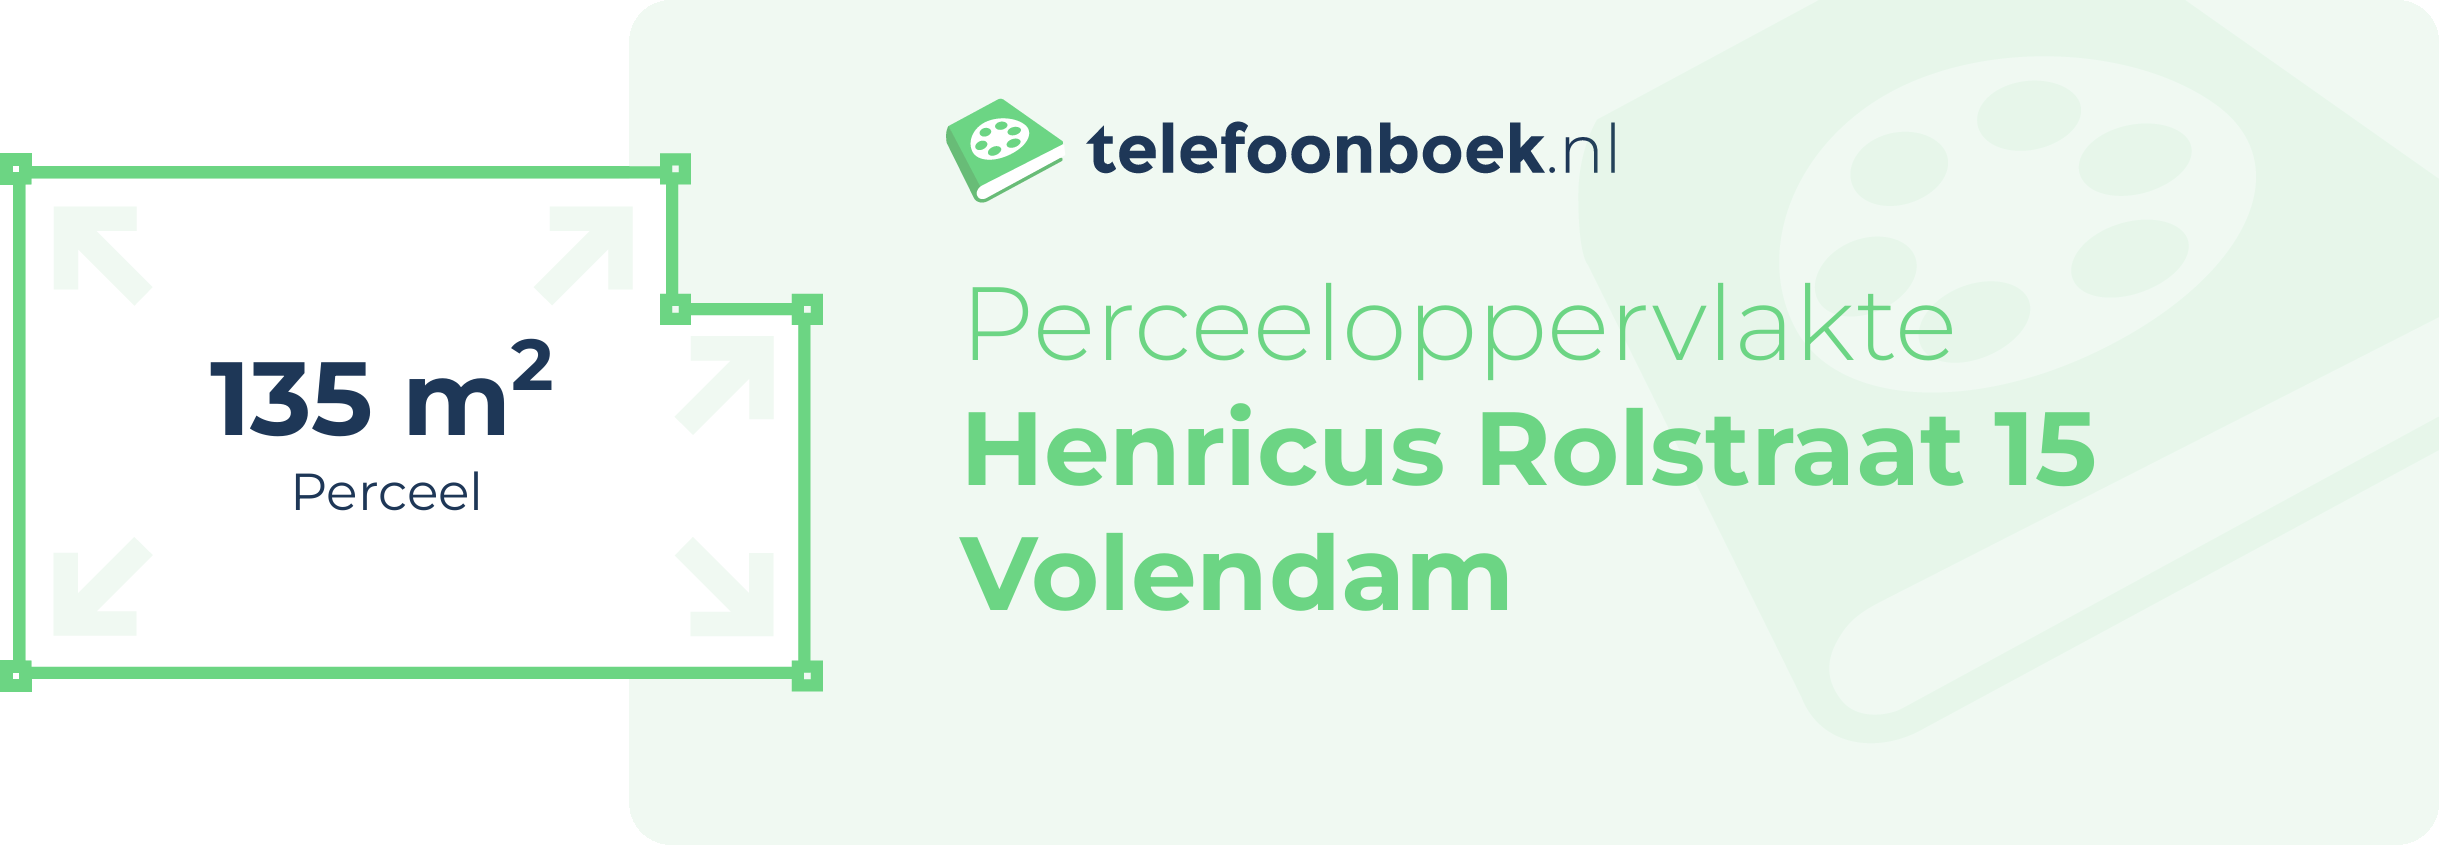 Perceeloppervlakte Henricus Rolstraat 15 Volendam